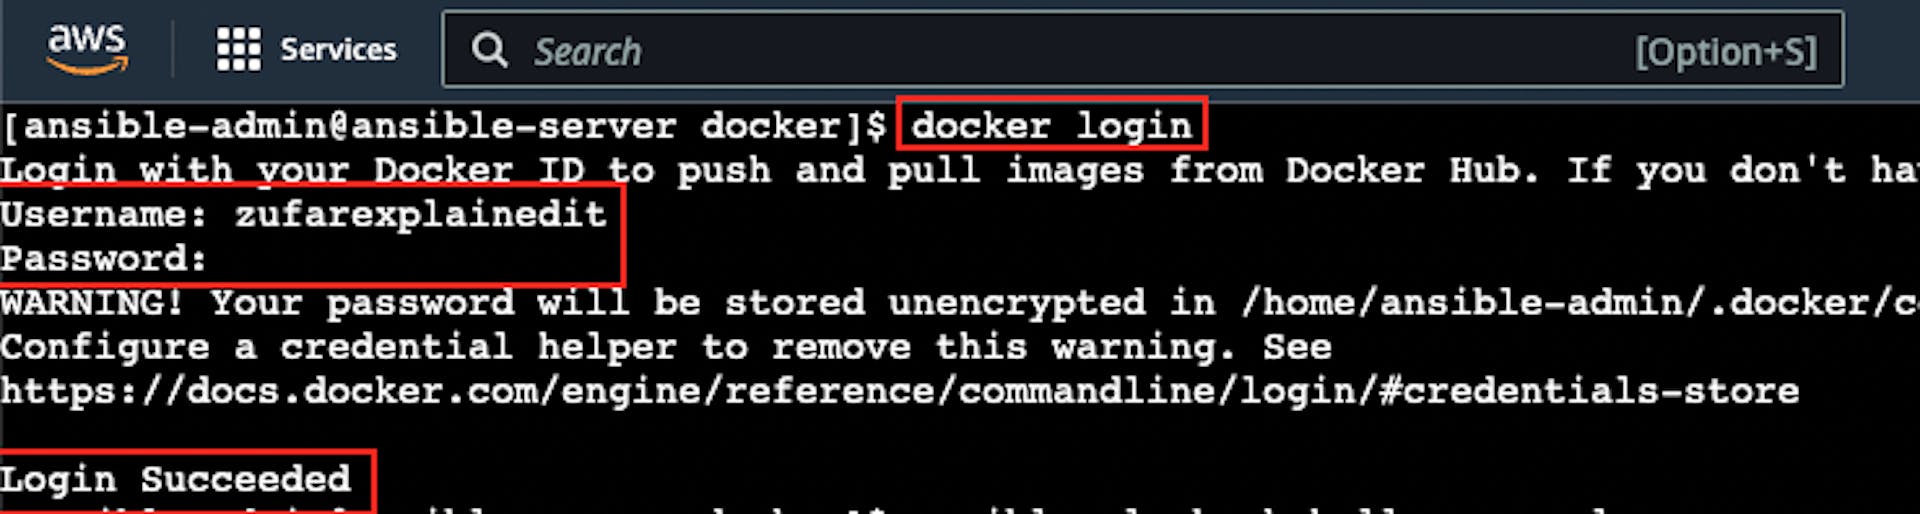 La captura de pantalla del inicio de sesión exitoso de Docker en la instancia EC2 "AnsibleServer"